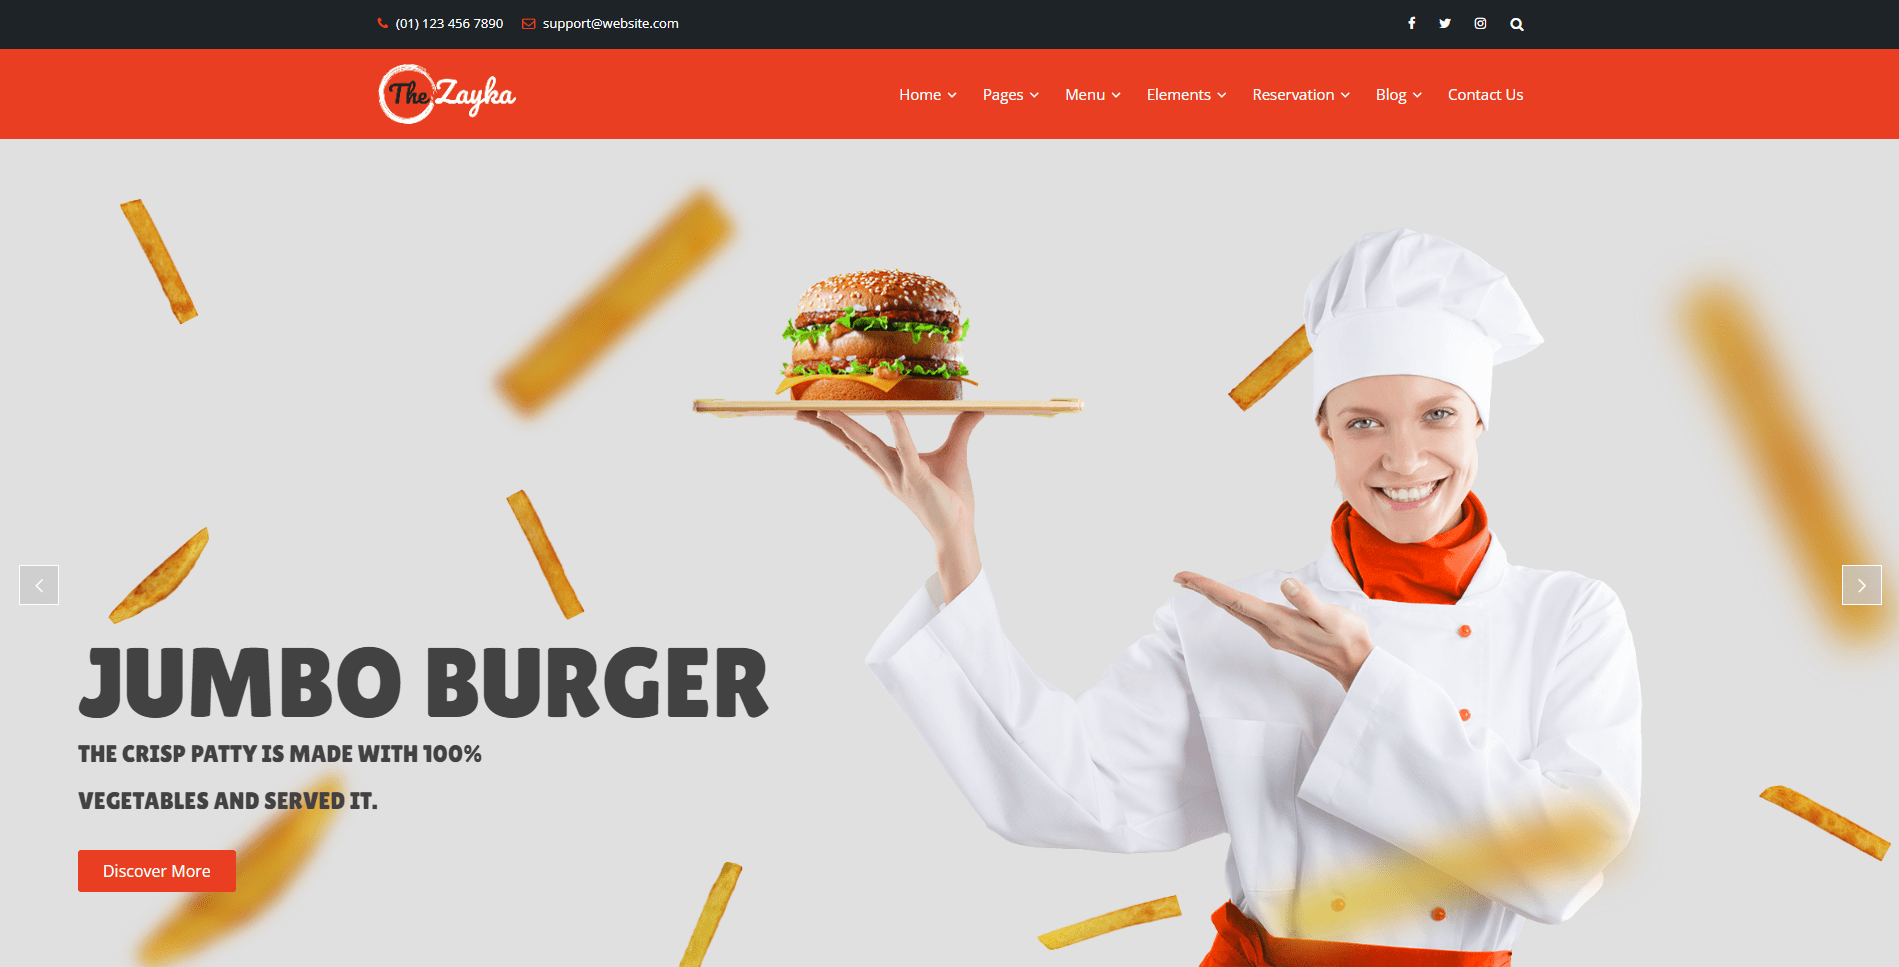 The Zayka - Multipurpose Restaurant & Cafe HTML5 Template